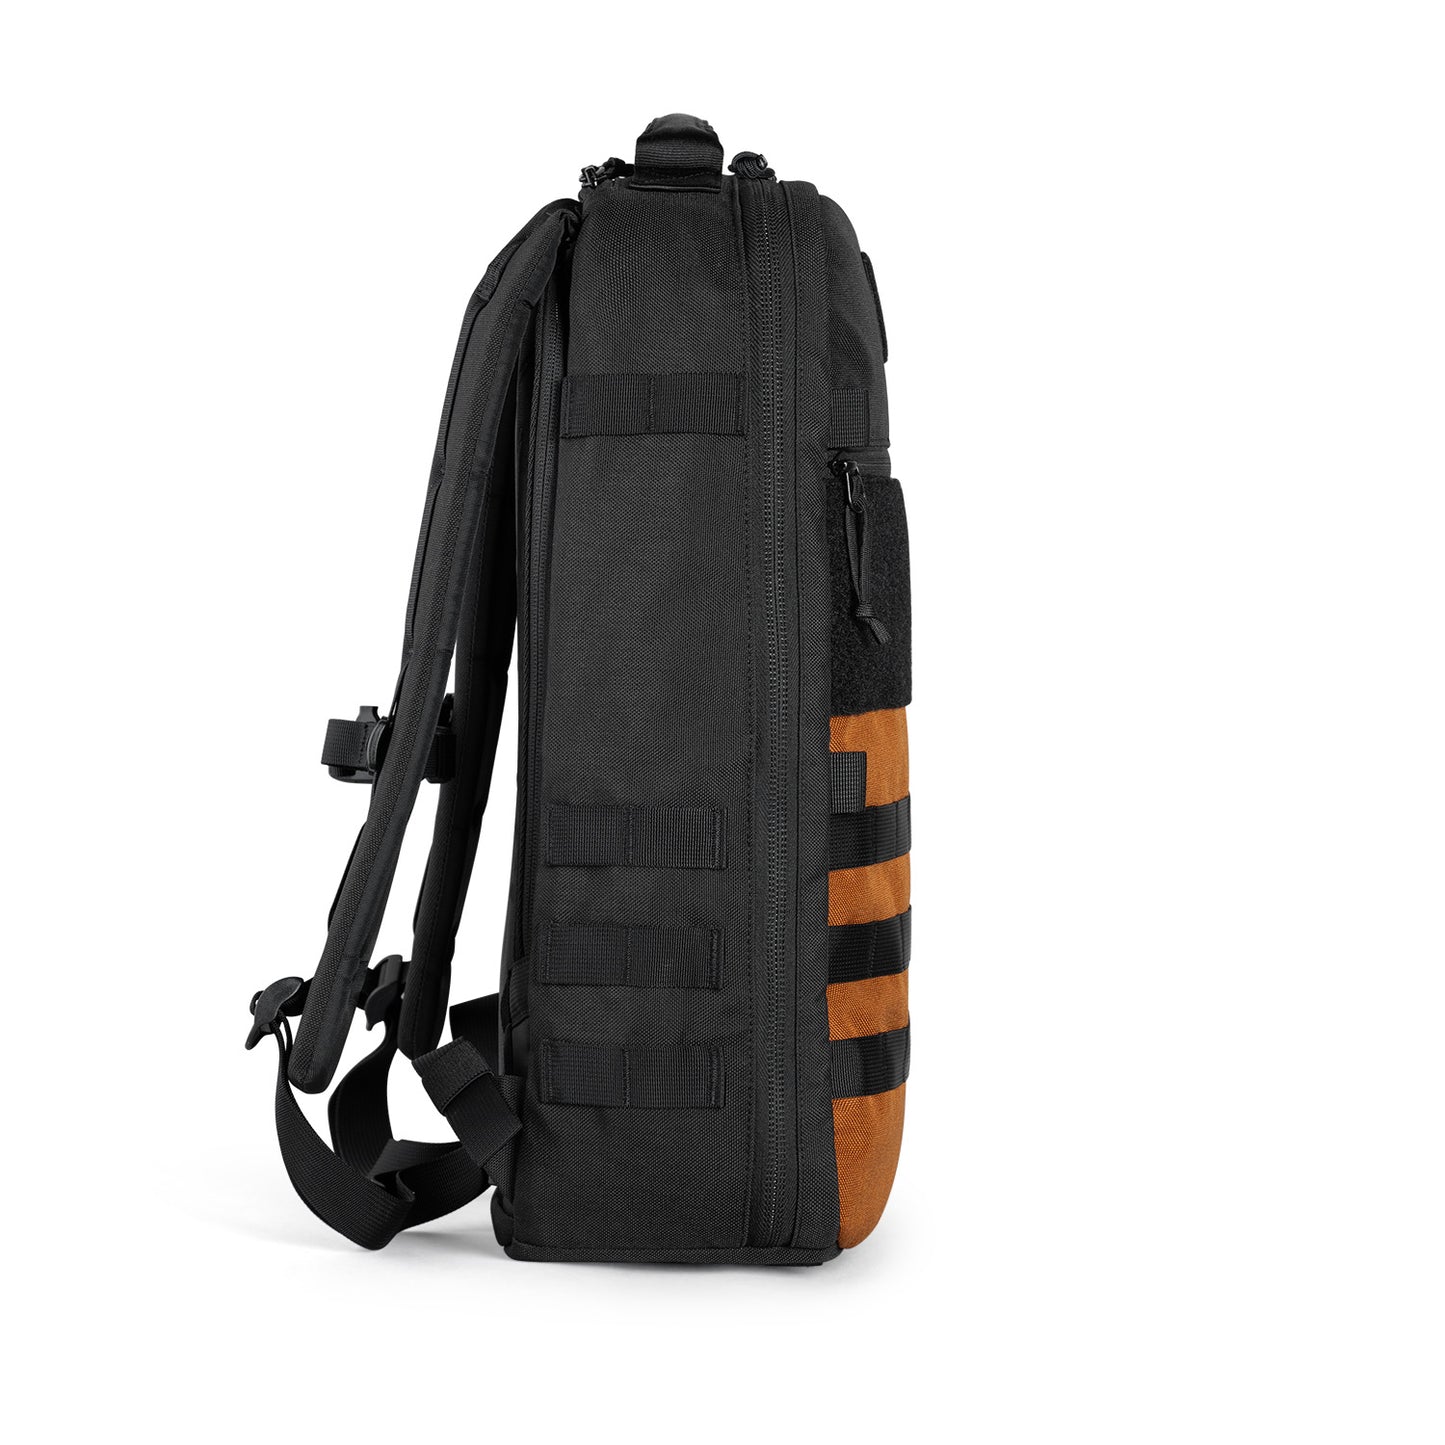 CT21 V3.0 Backpack - The Tanker - 1000D Cordura® Nylon